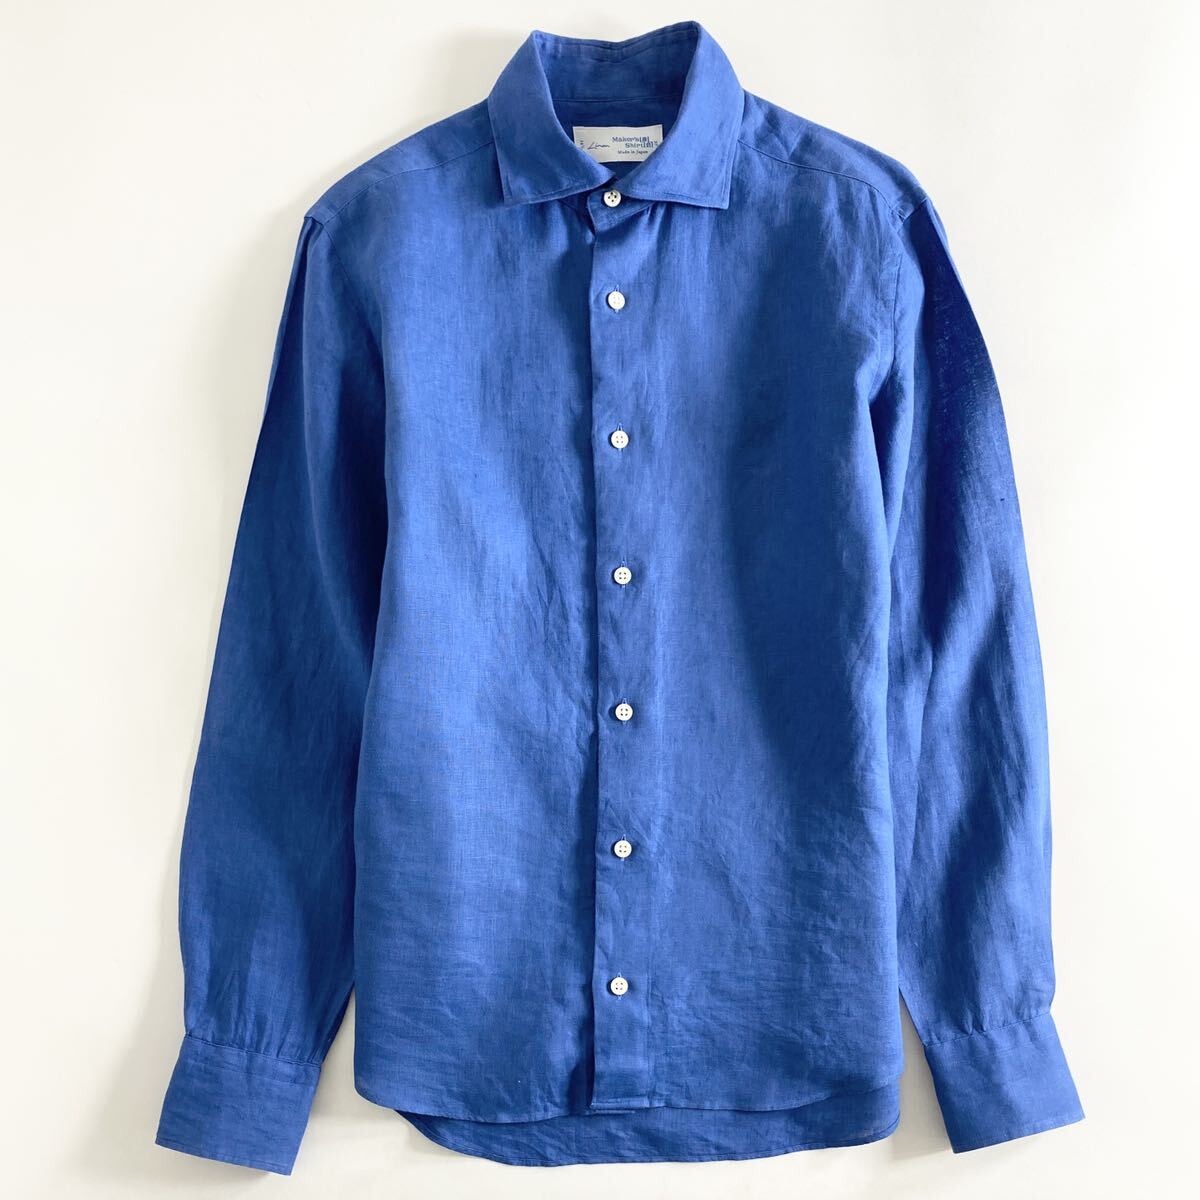 Hc22-12 日本製 Maker's Shirt 鎌倉シャツ Linen リネン 麻100% 長袖シャツ ドレスシャツ ドレスカジュアル 14.5/37 M相当 ブルー メンズ_画像1